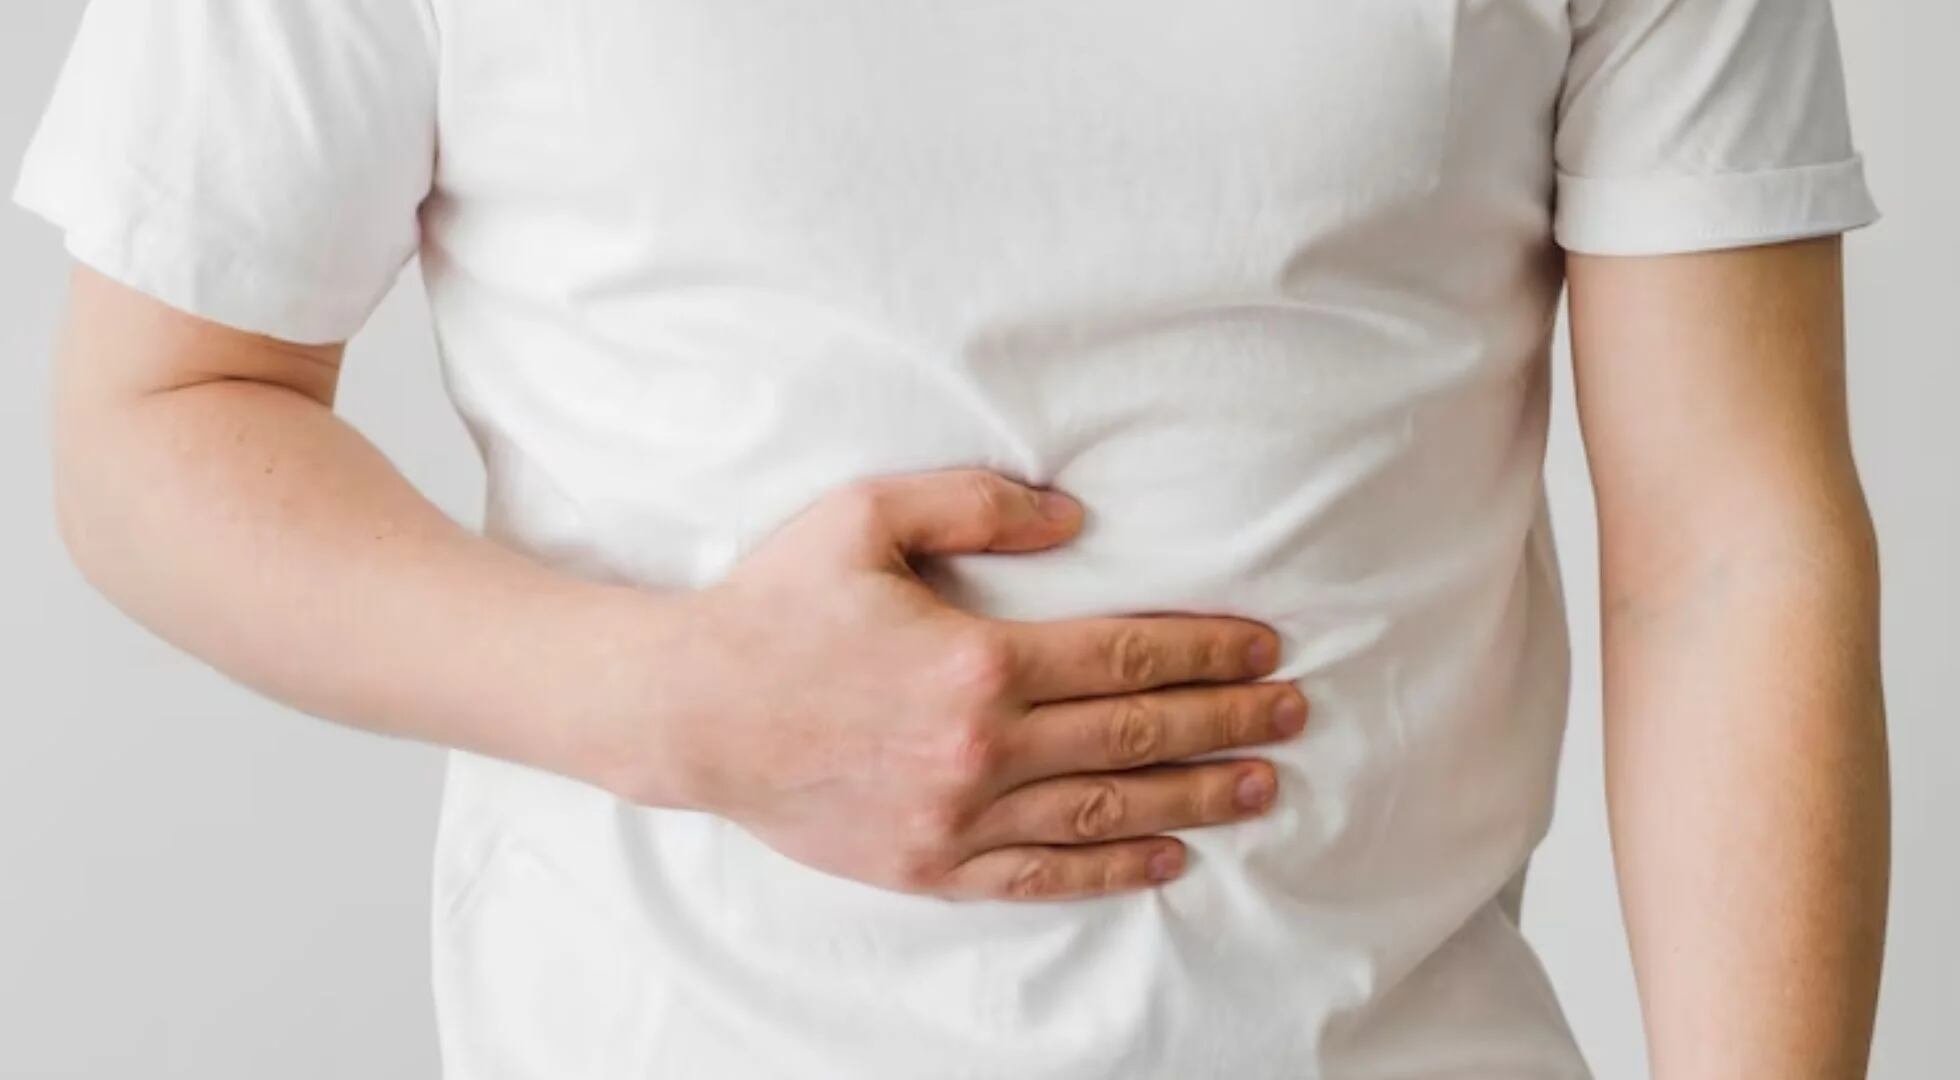 Los malestares digestivos diversos son algunos de los efectos secundarios de la medicación (Freepik)